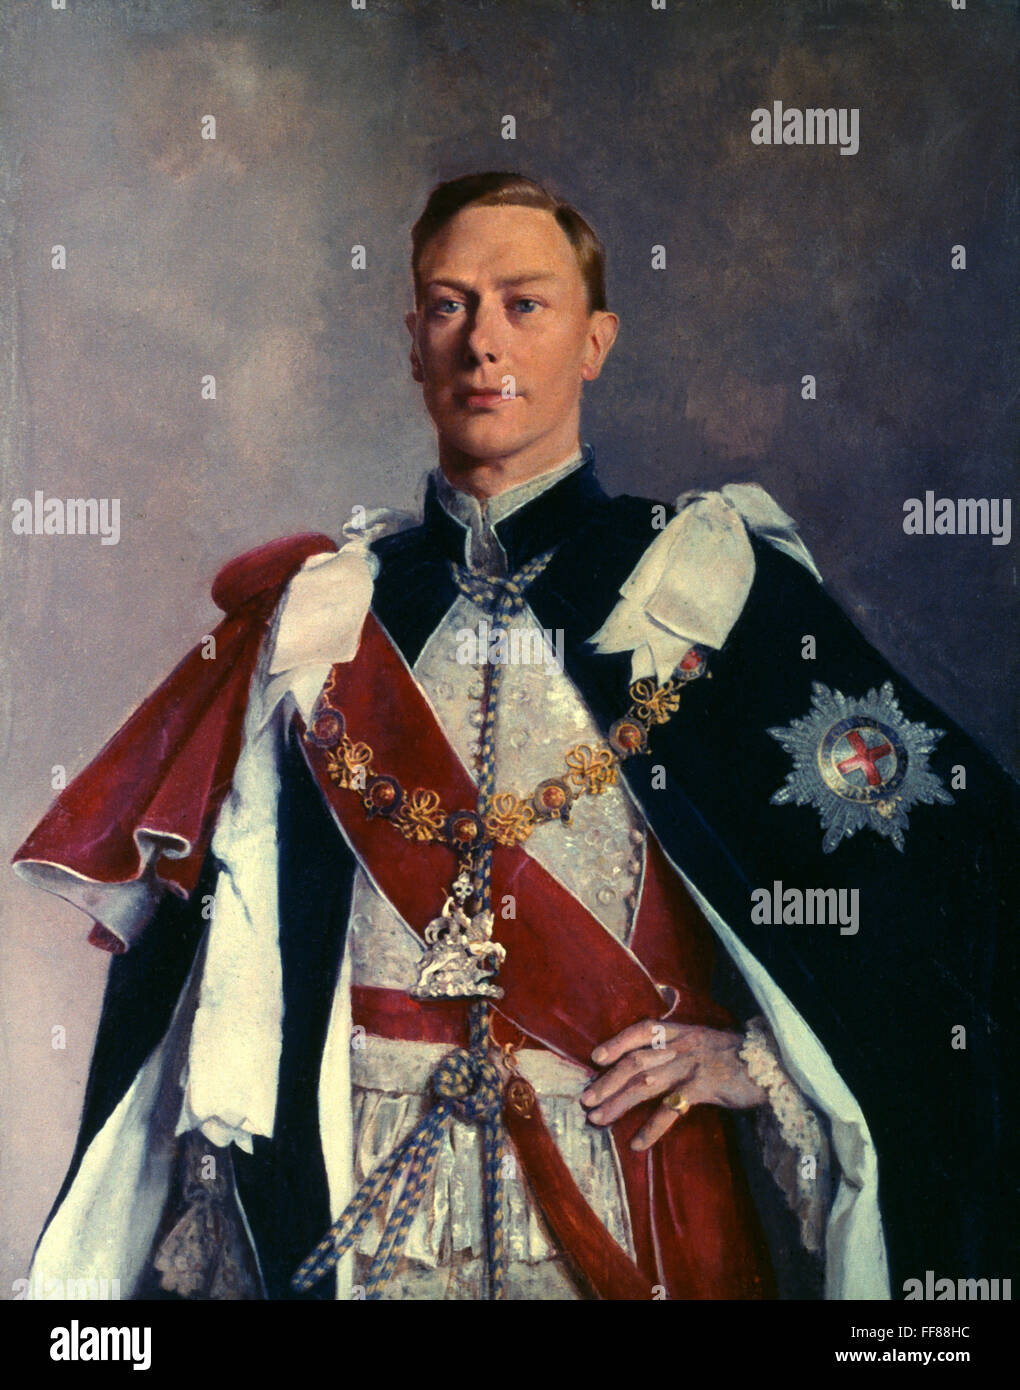 El Rey George VI DE INGLATERRA /n(1895-1952). El rey de Inglaterra, 1936-1952. Óleo sobre lienzo, c1941, por Sir Gerald Kelly. Foto de stock